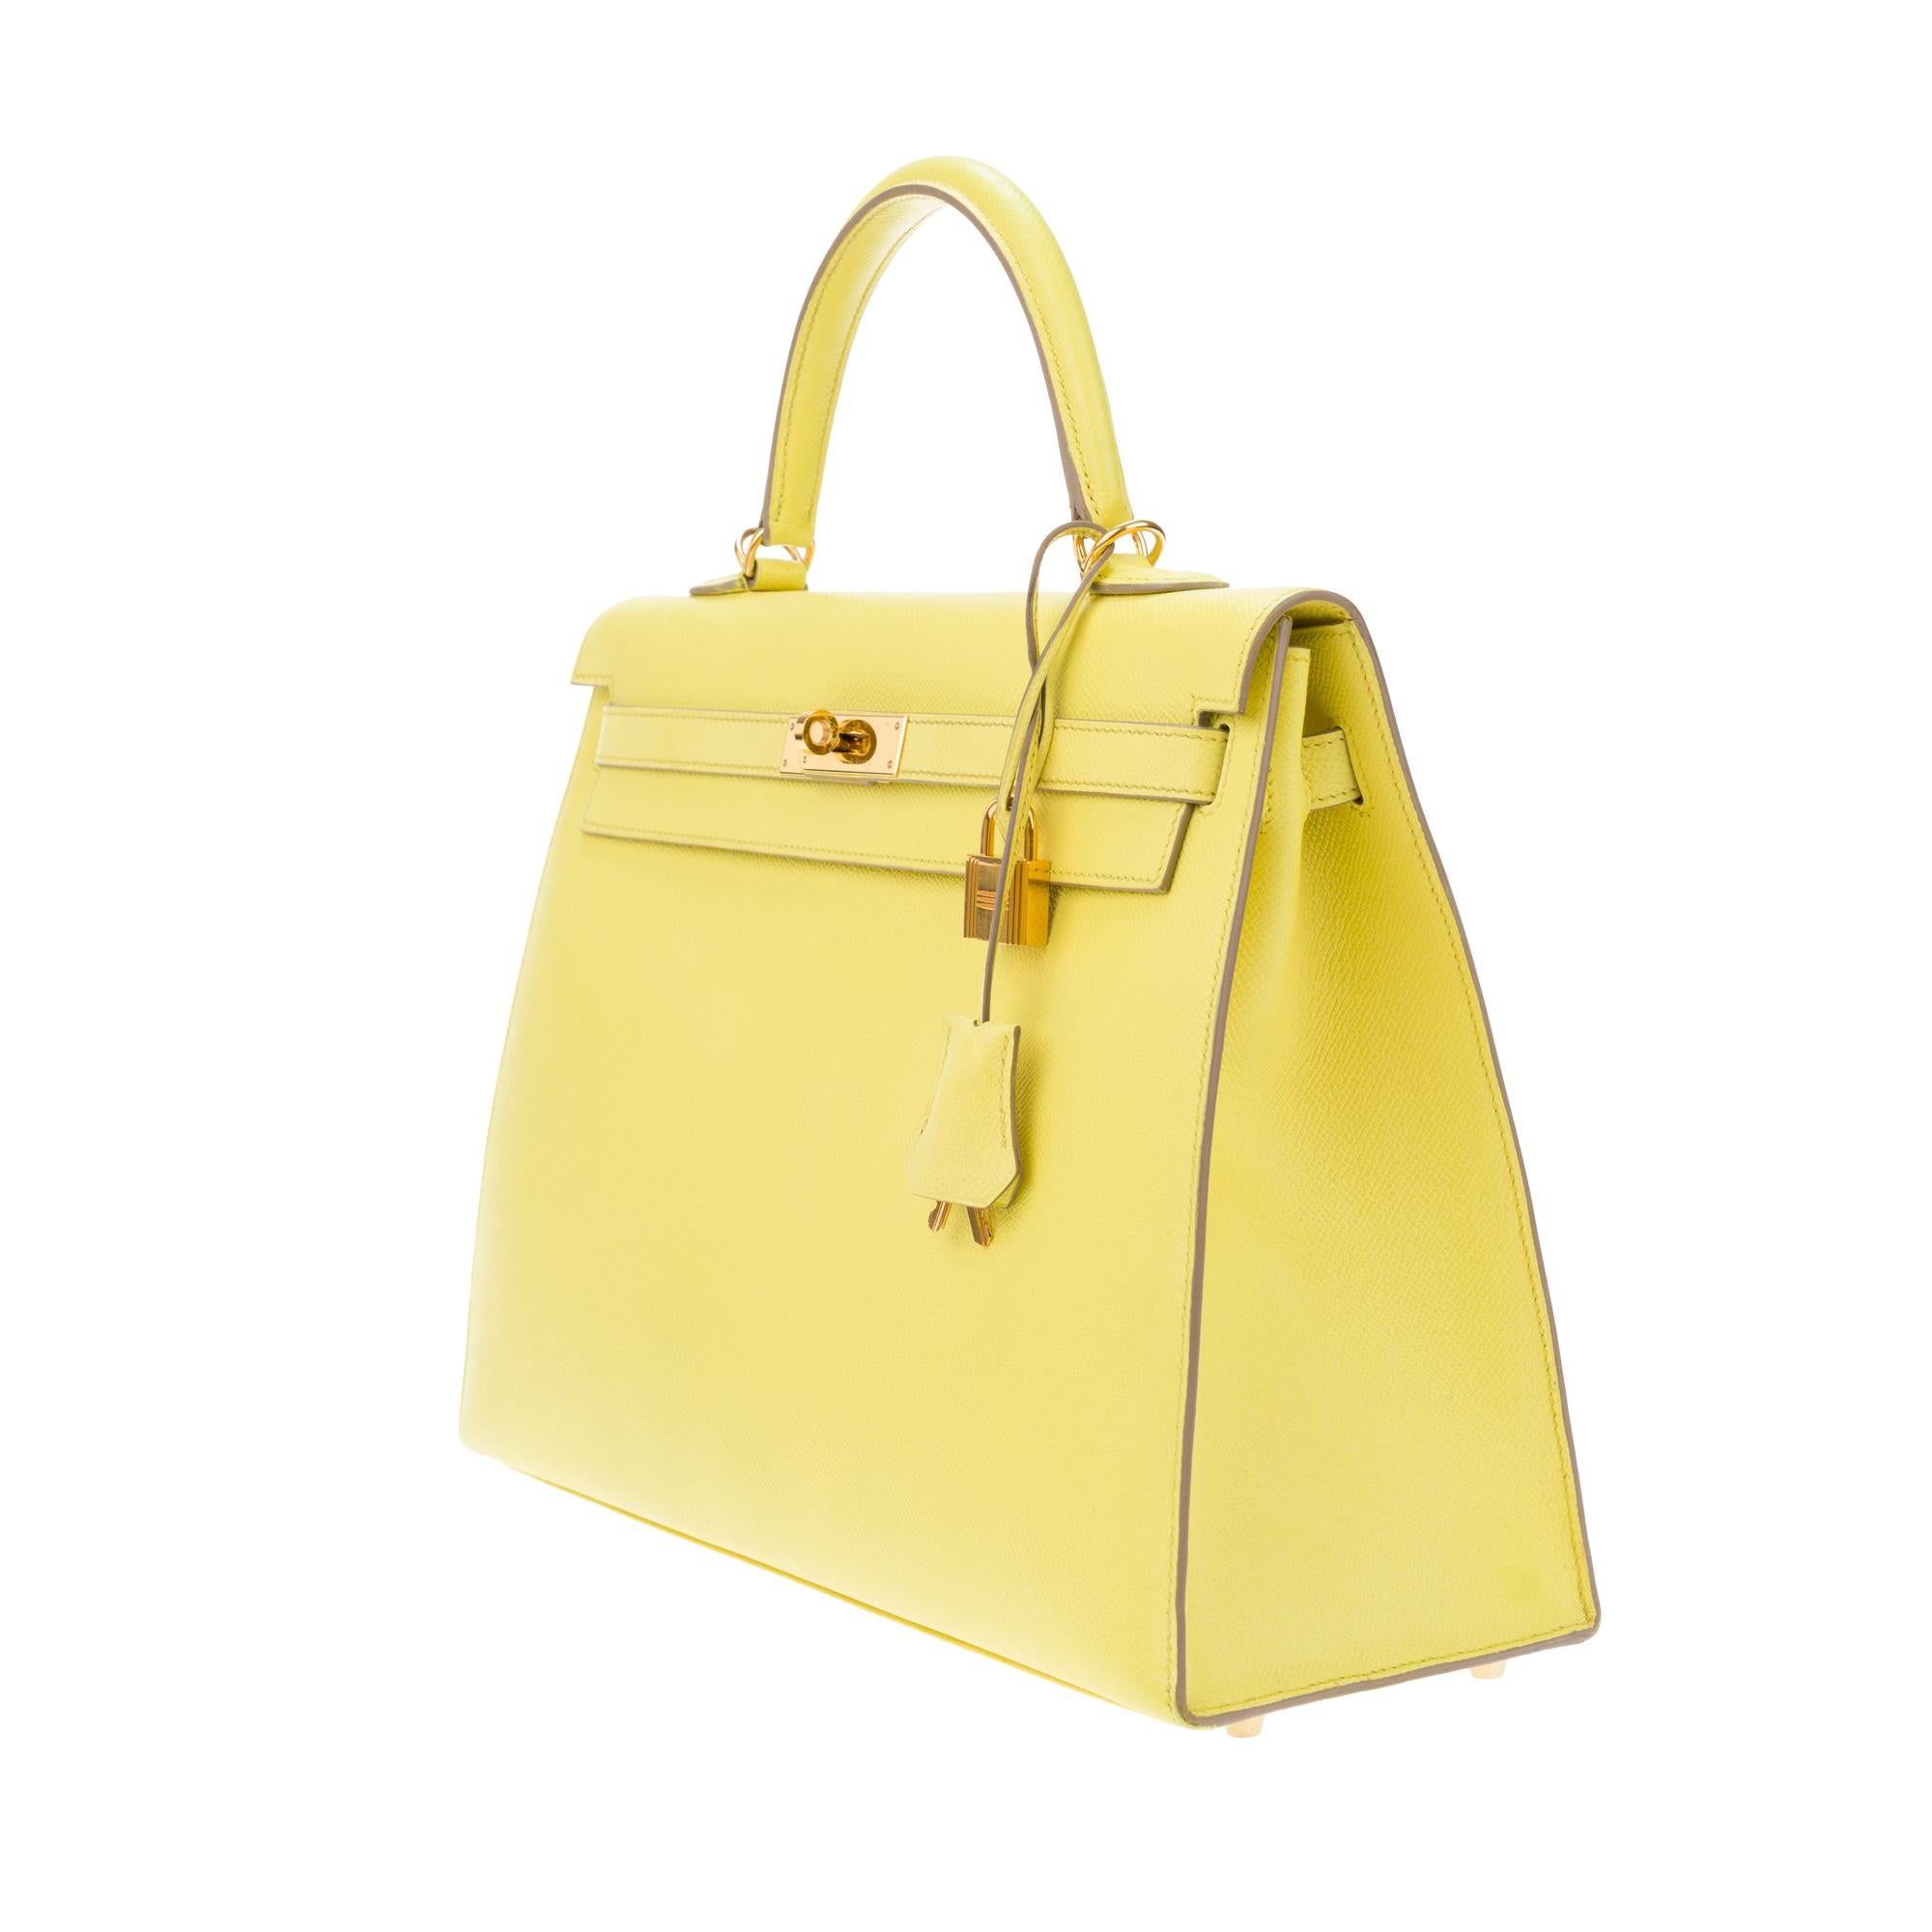 Erstaunlich Hermès Kelly 35 Handtasche mit Gurt in epsom gelb Zitrone Farbe, GHW ! Damen